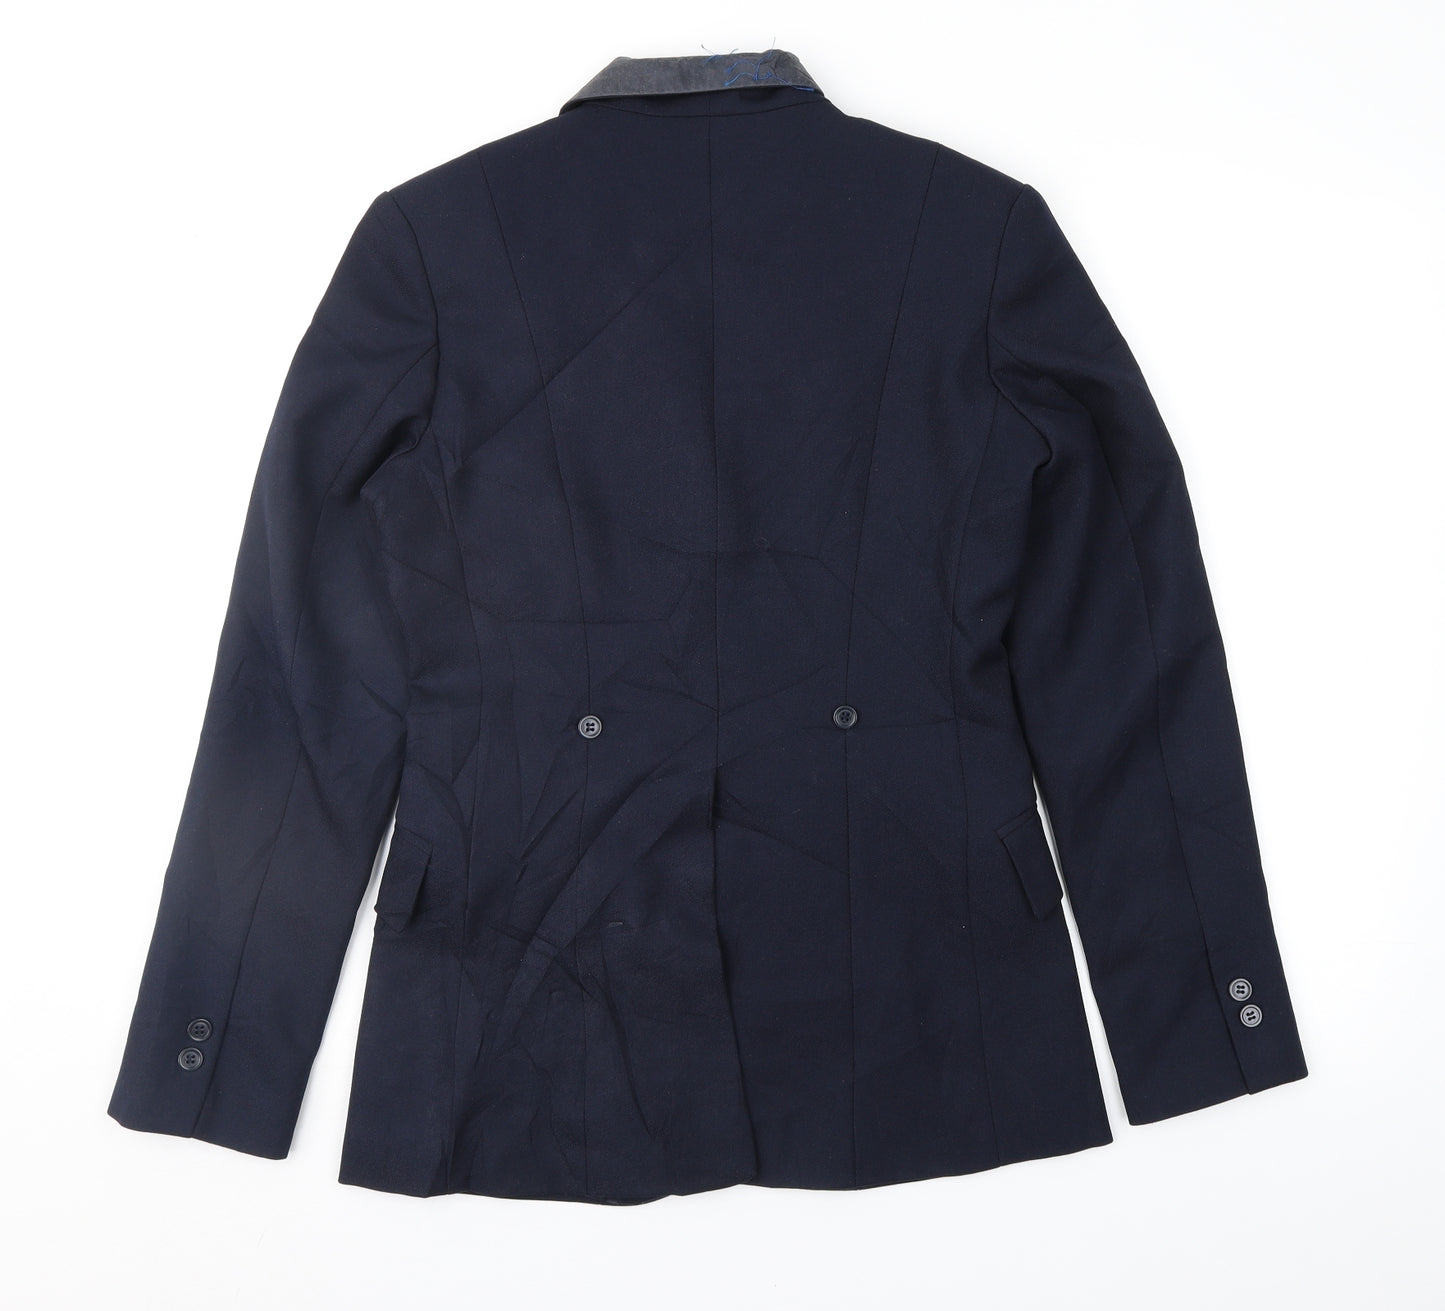 Dublin Womens Blue   Jacket Suit Jacket Size 8  - Hacking Jacket